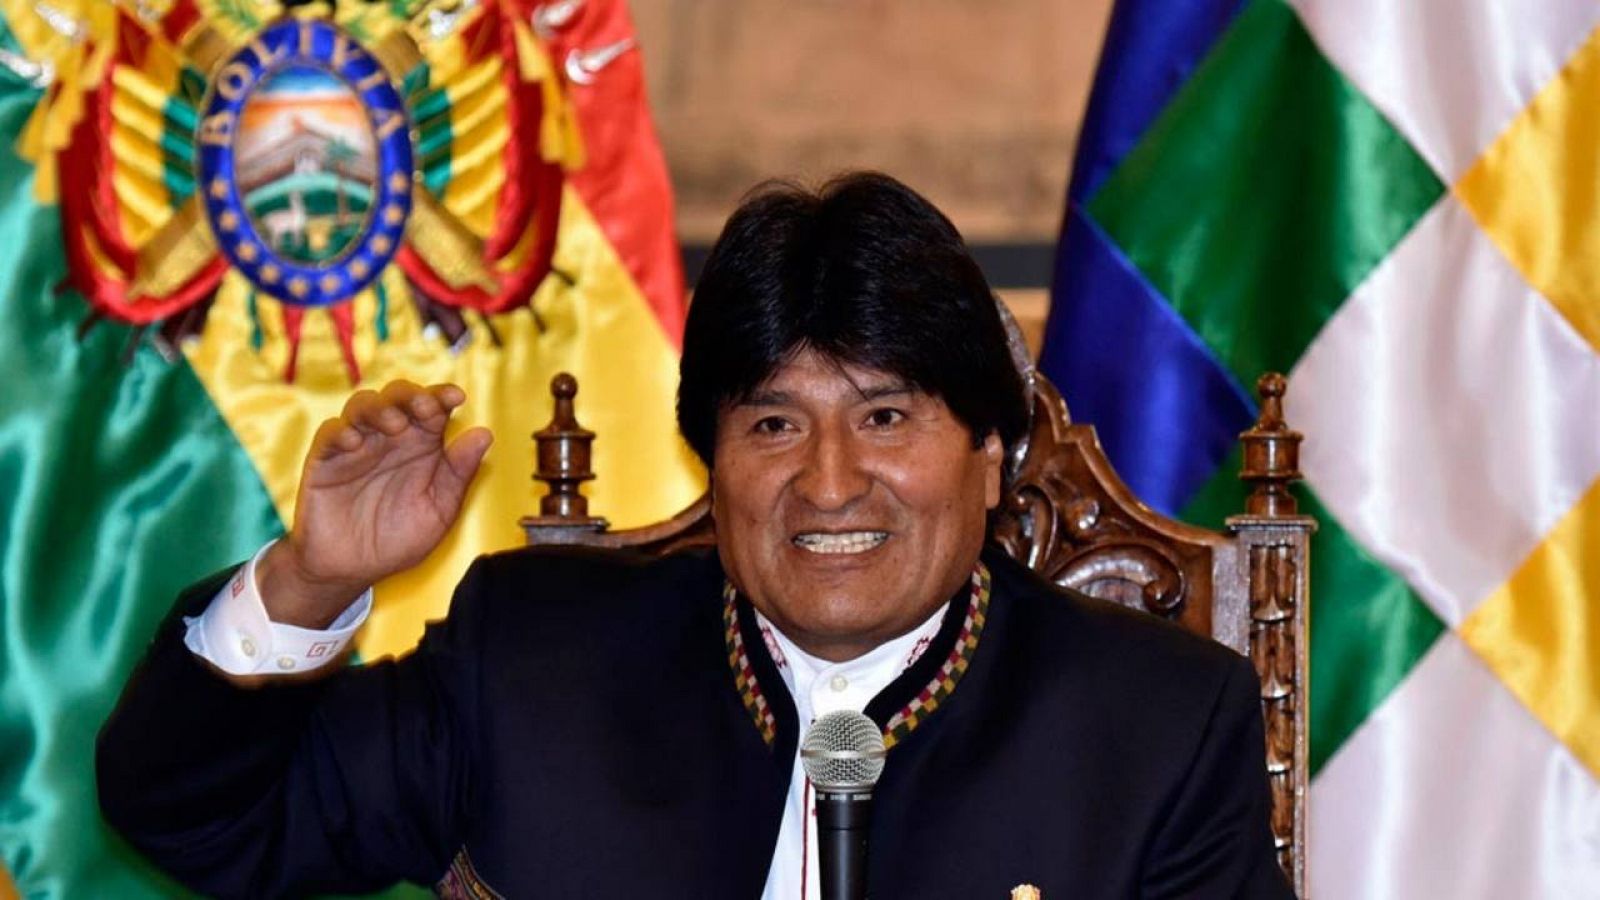 Evo Morales: «Si no luchamos, los señores de la muerte habrán triunfado».